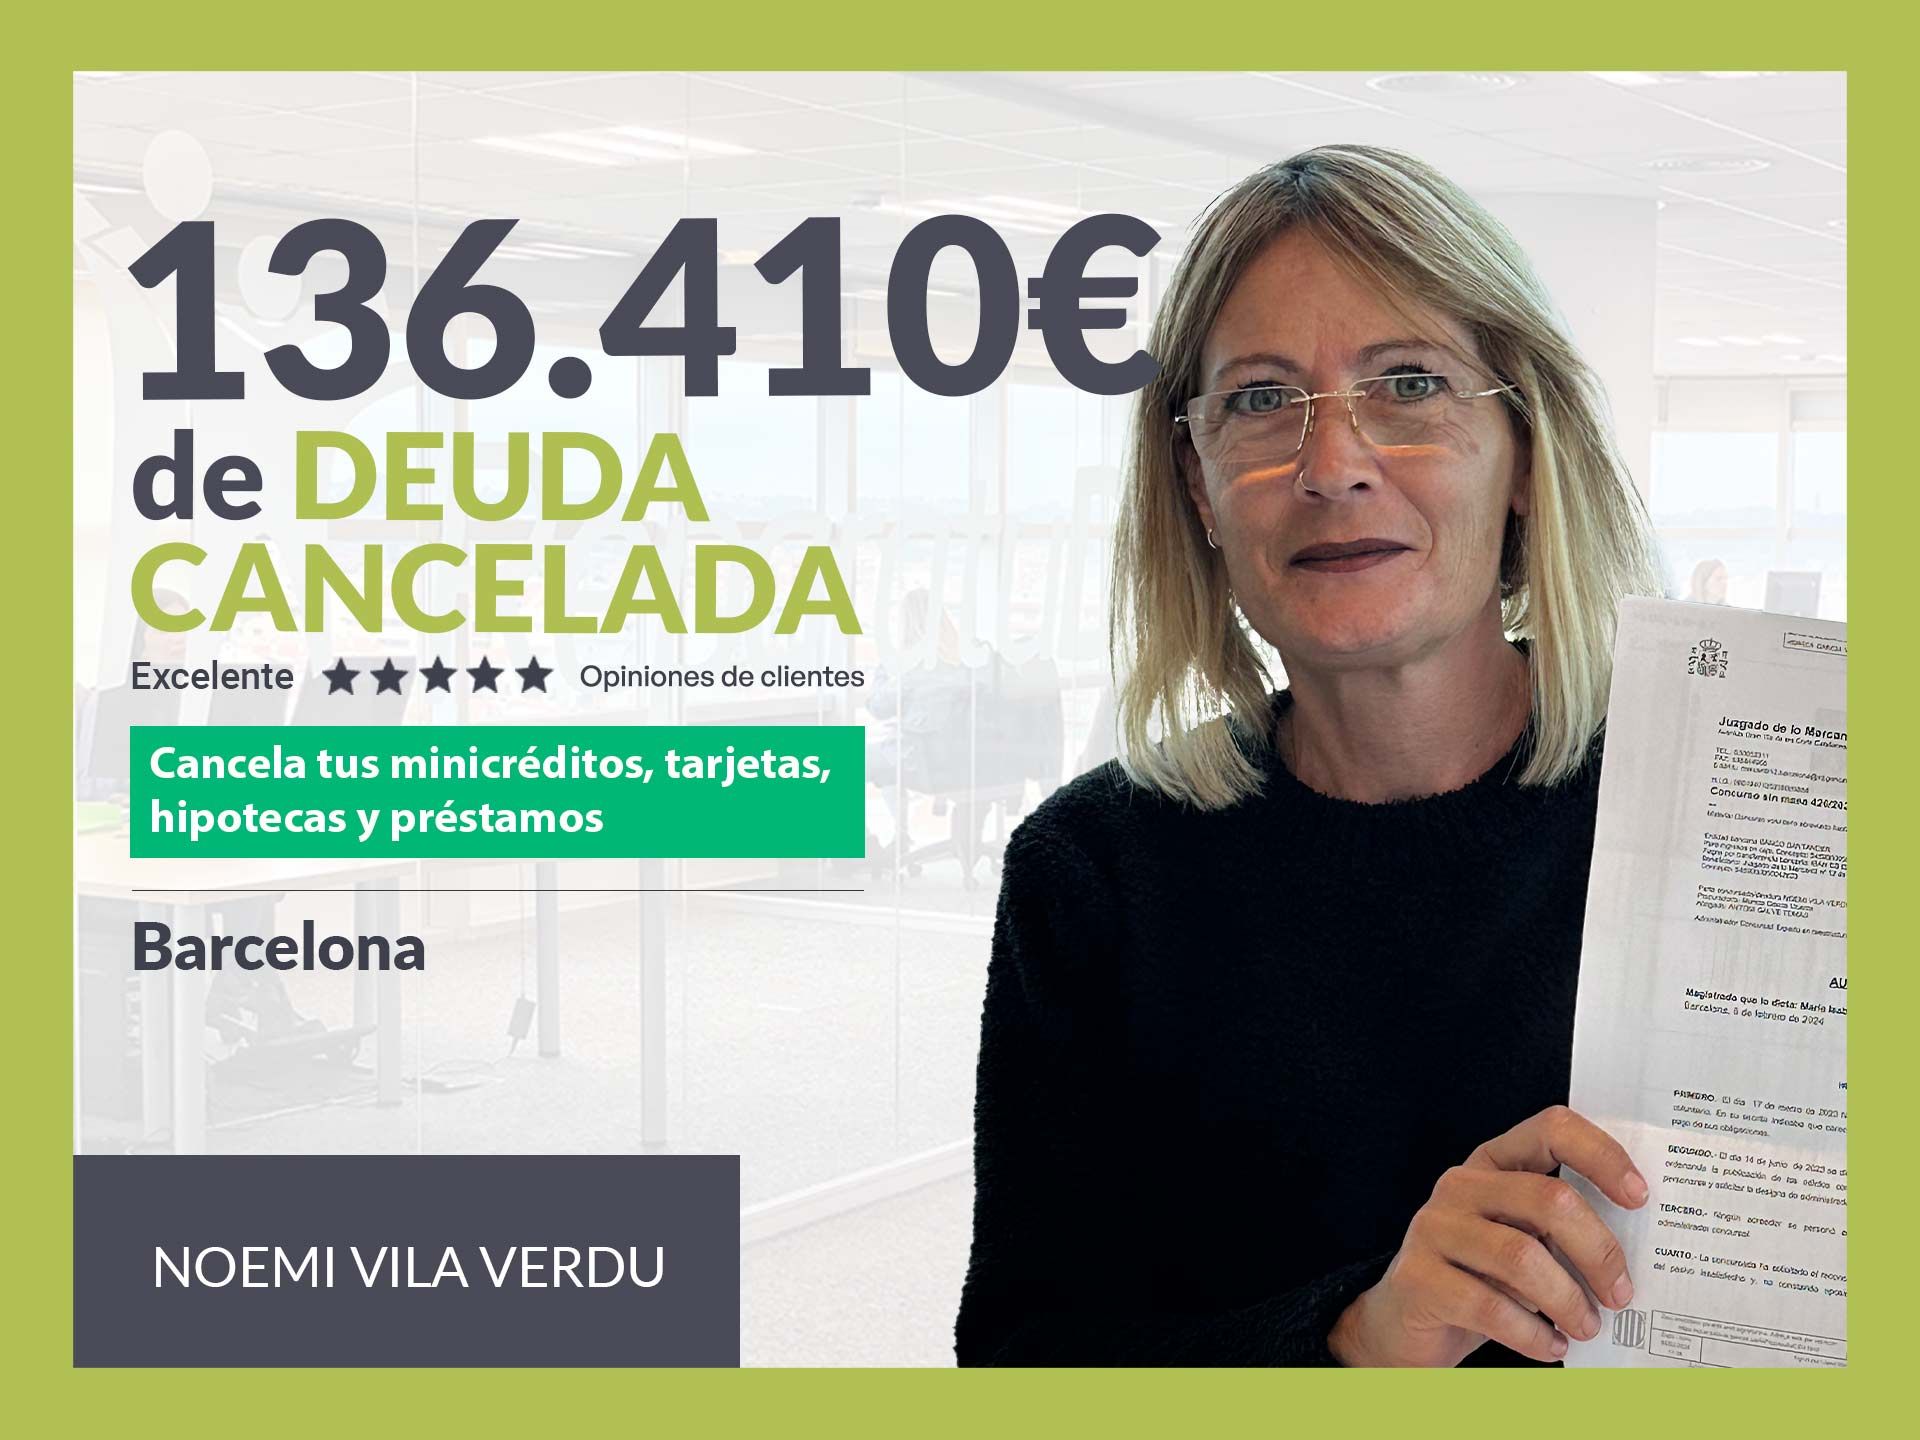 Repara tu Deuda Abogados cancela 136.410? en Barcelona (Catalunya) con la Ley de Segunda Oportunidad